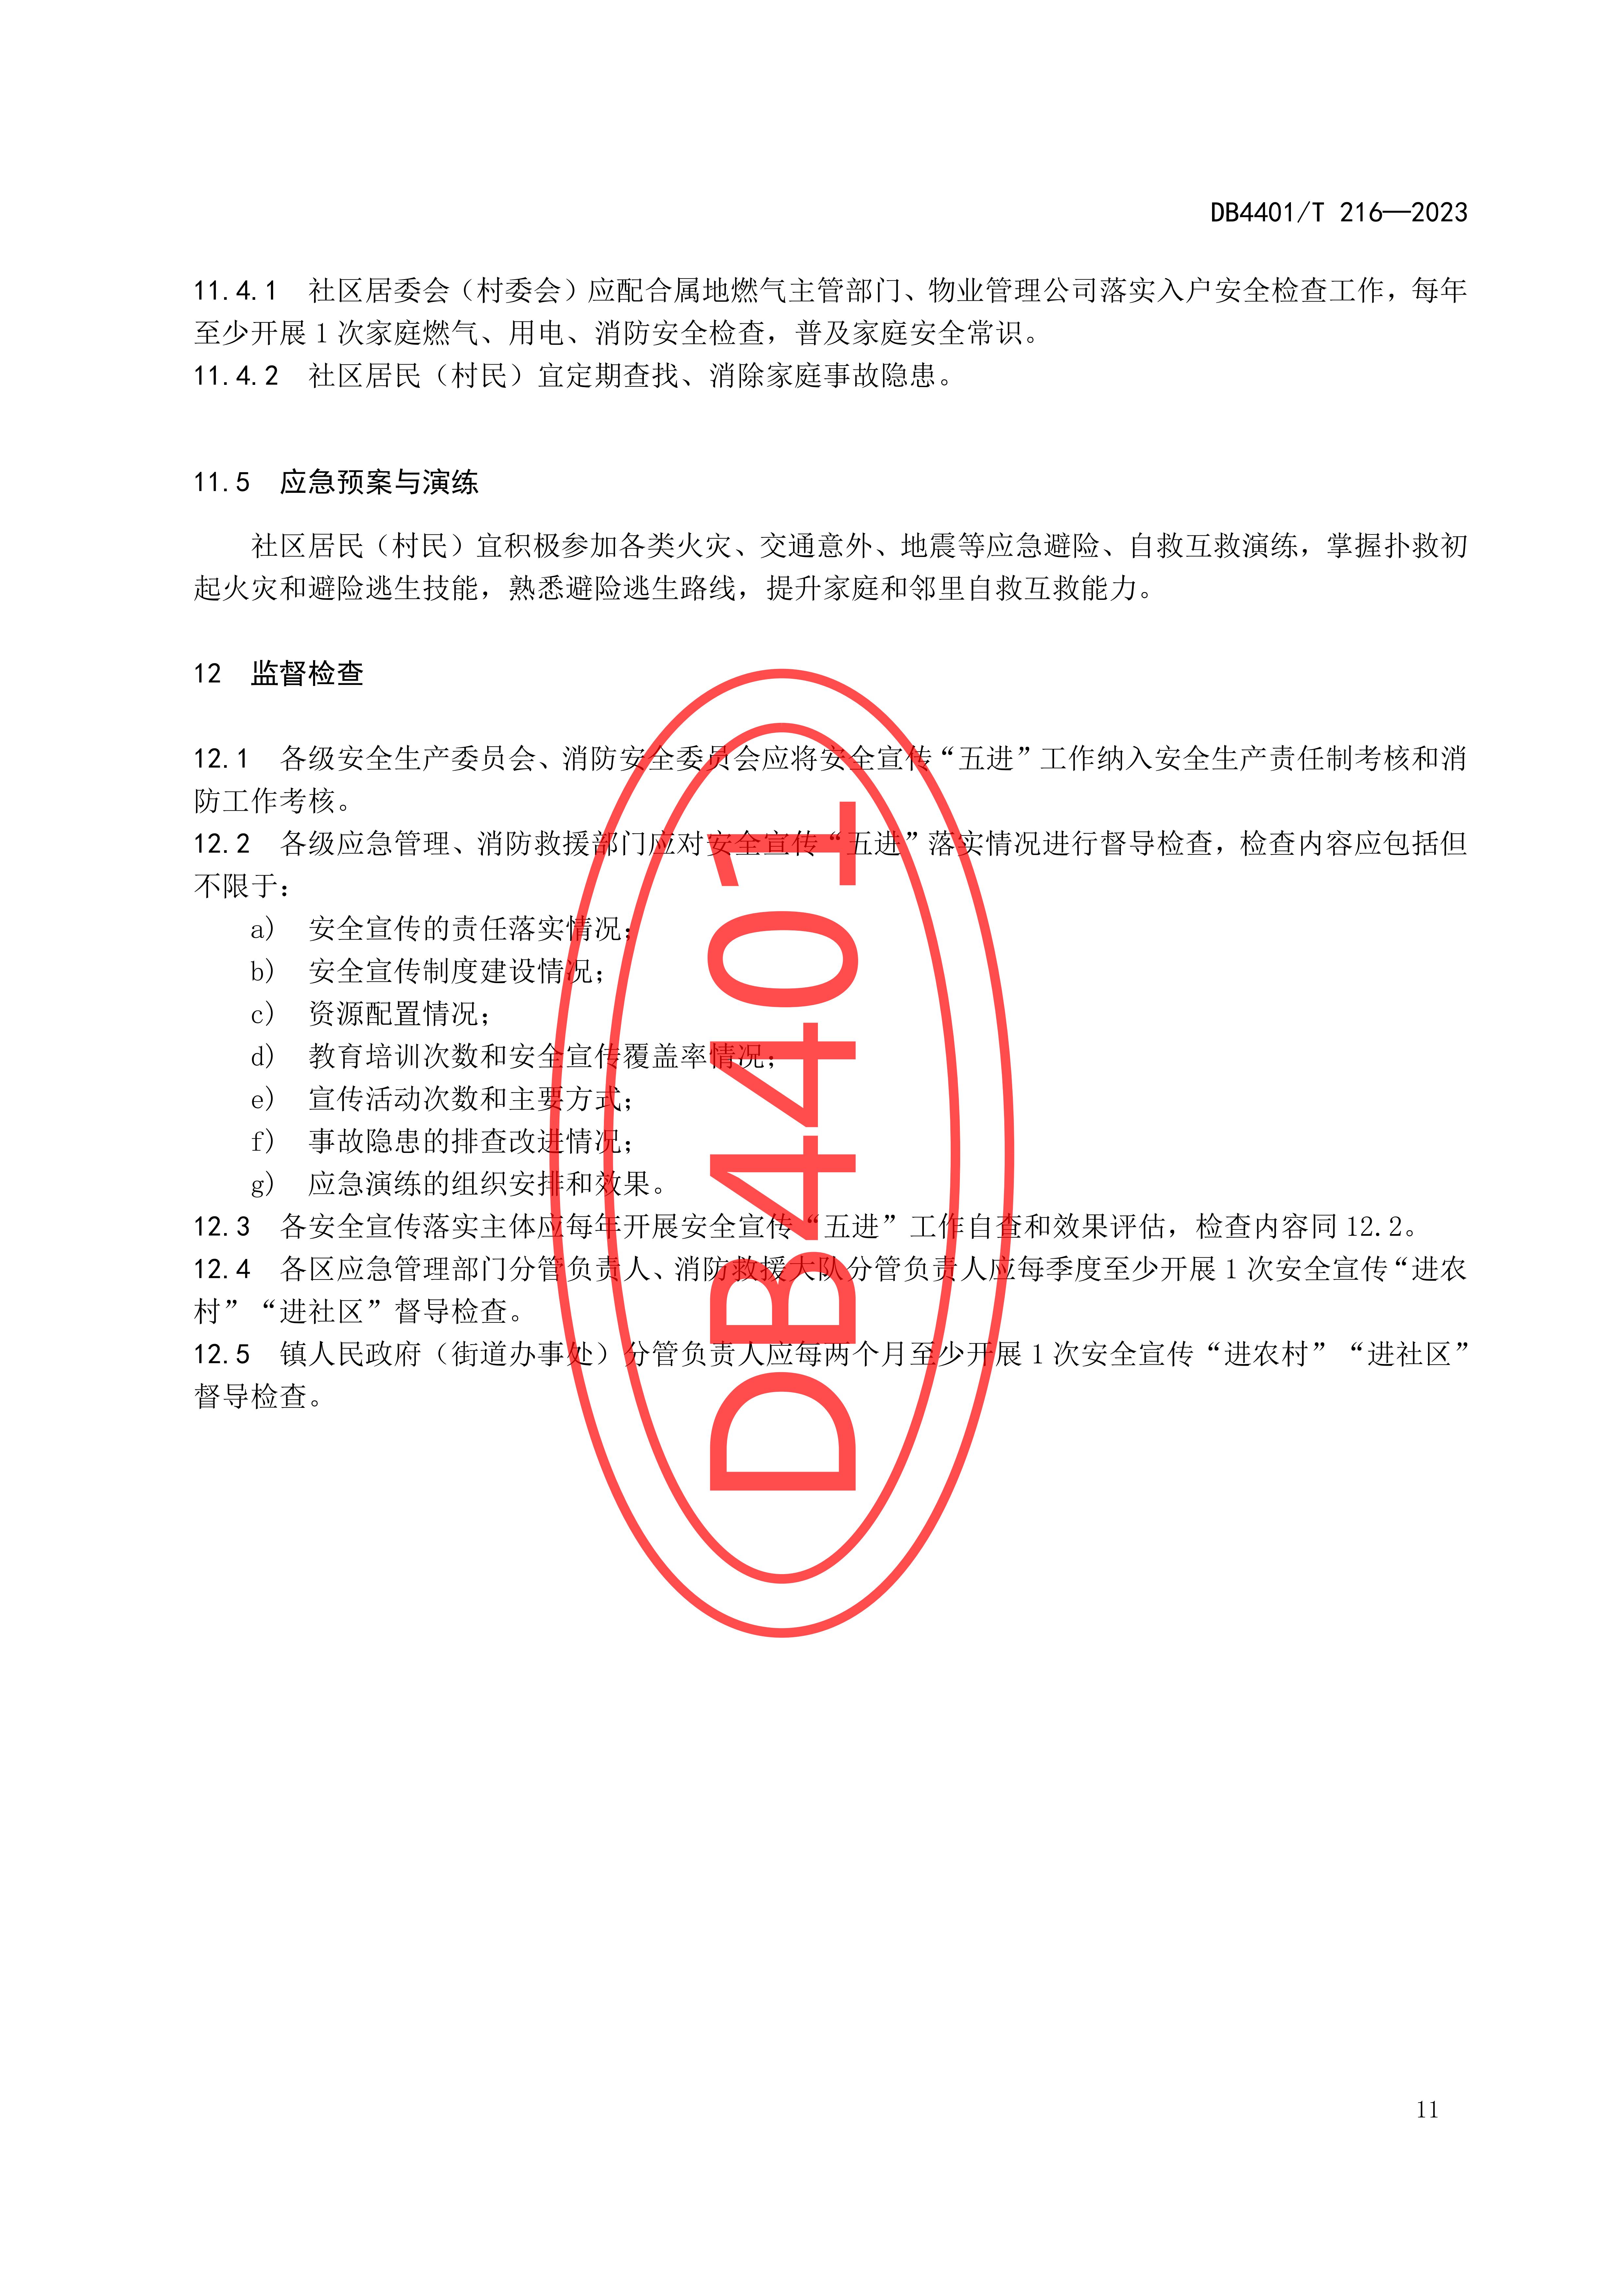 (终稿 发布稿)广州市地方标准《安全宣传“五进”工作规范》20230625_16.jpg